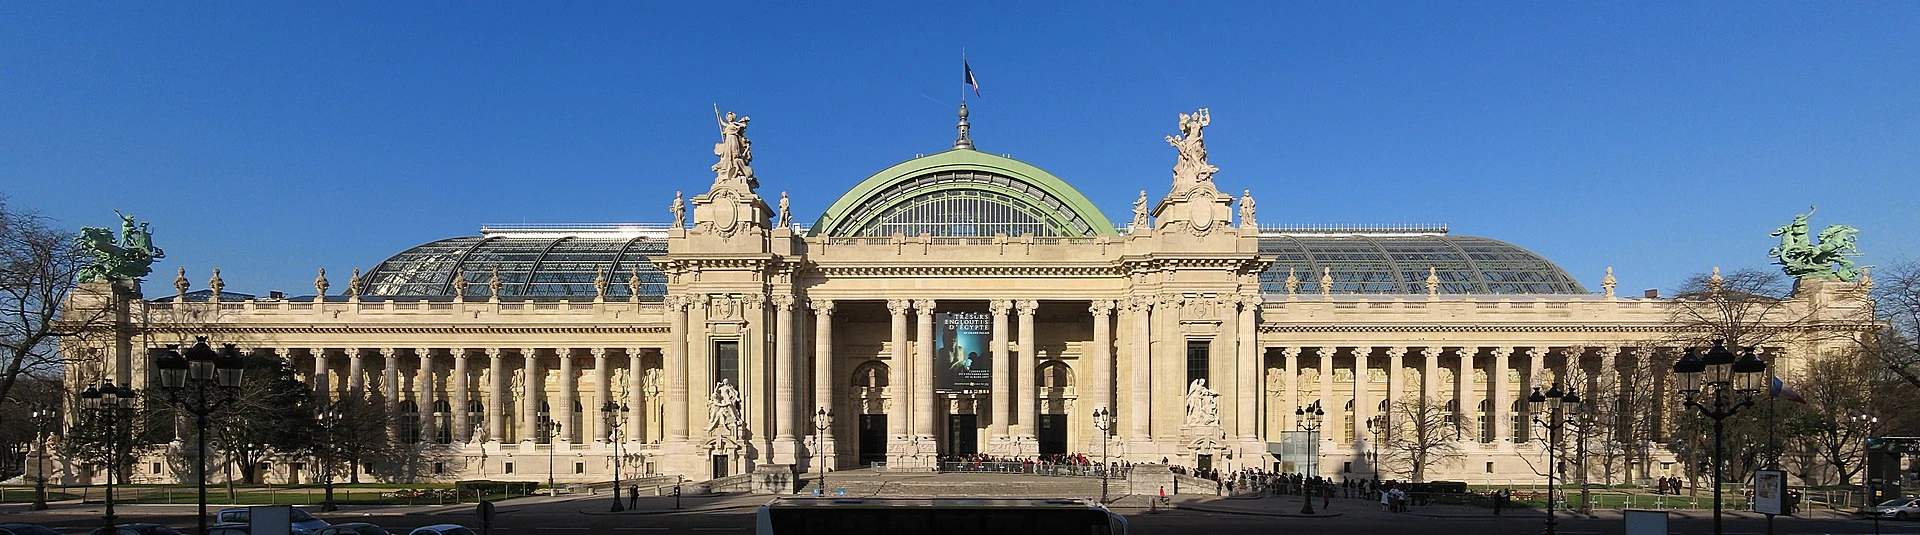 Magnifique photo de la façade principale du Grand Palais par sanchezn — Photographie personnelle, CC BY-SA 2.5, https://commons.wikimedia.org/w/index.php?curid=1796136